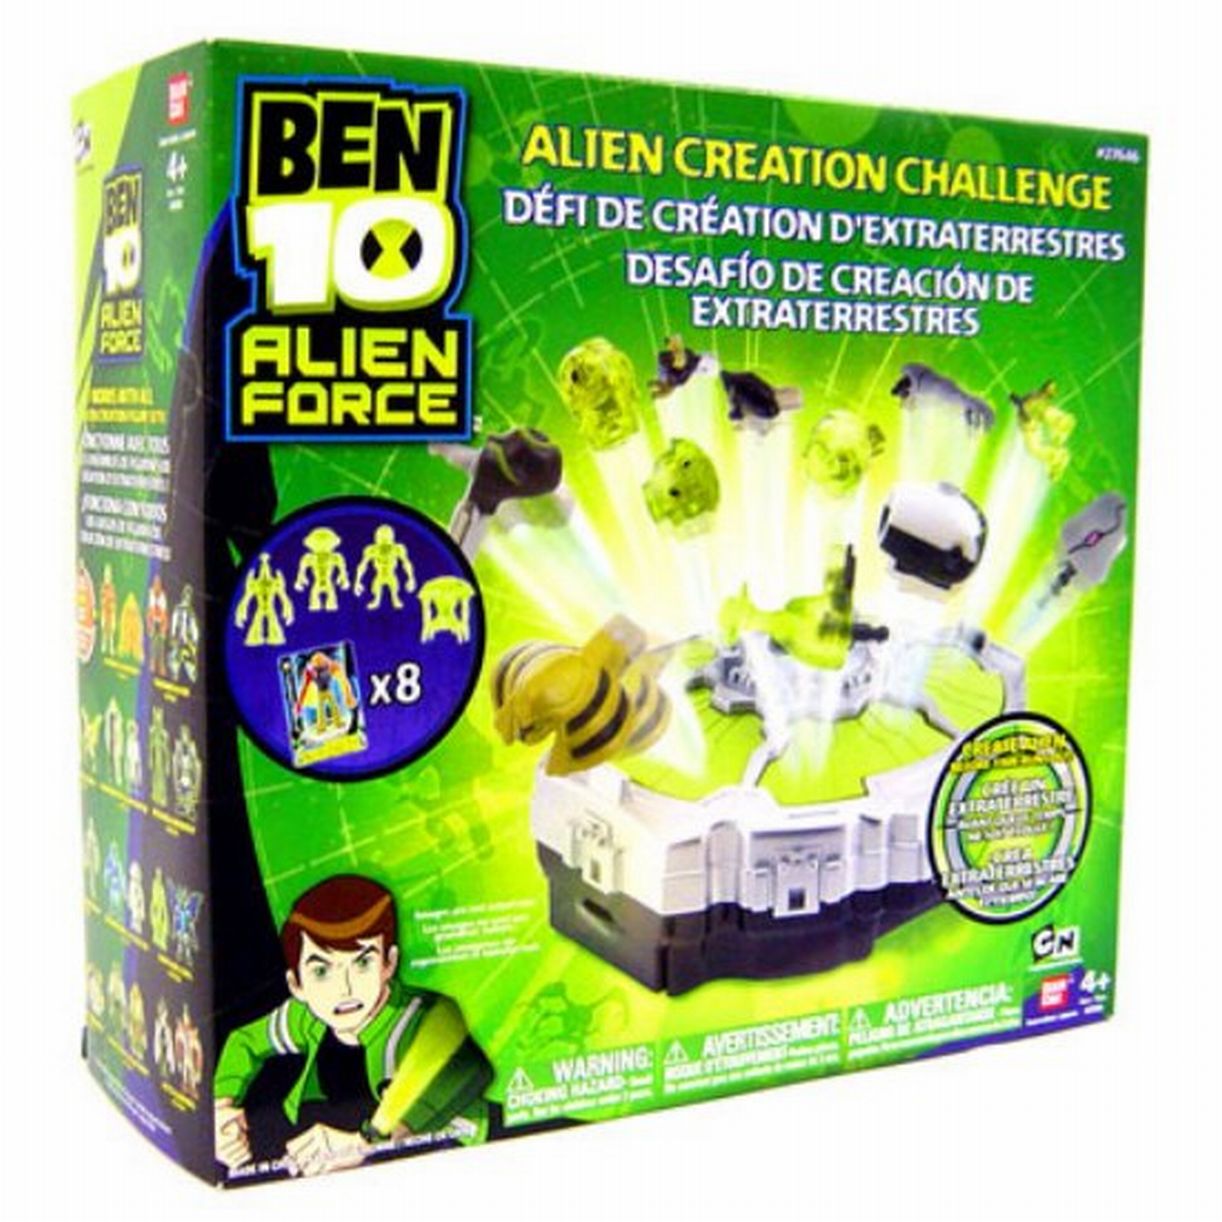 Ben 10 Alien Force Alien Creation Challenge Playset - image 2 of 2